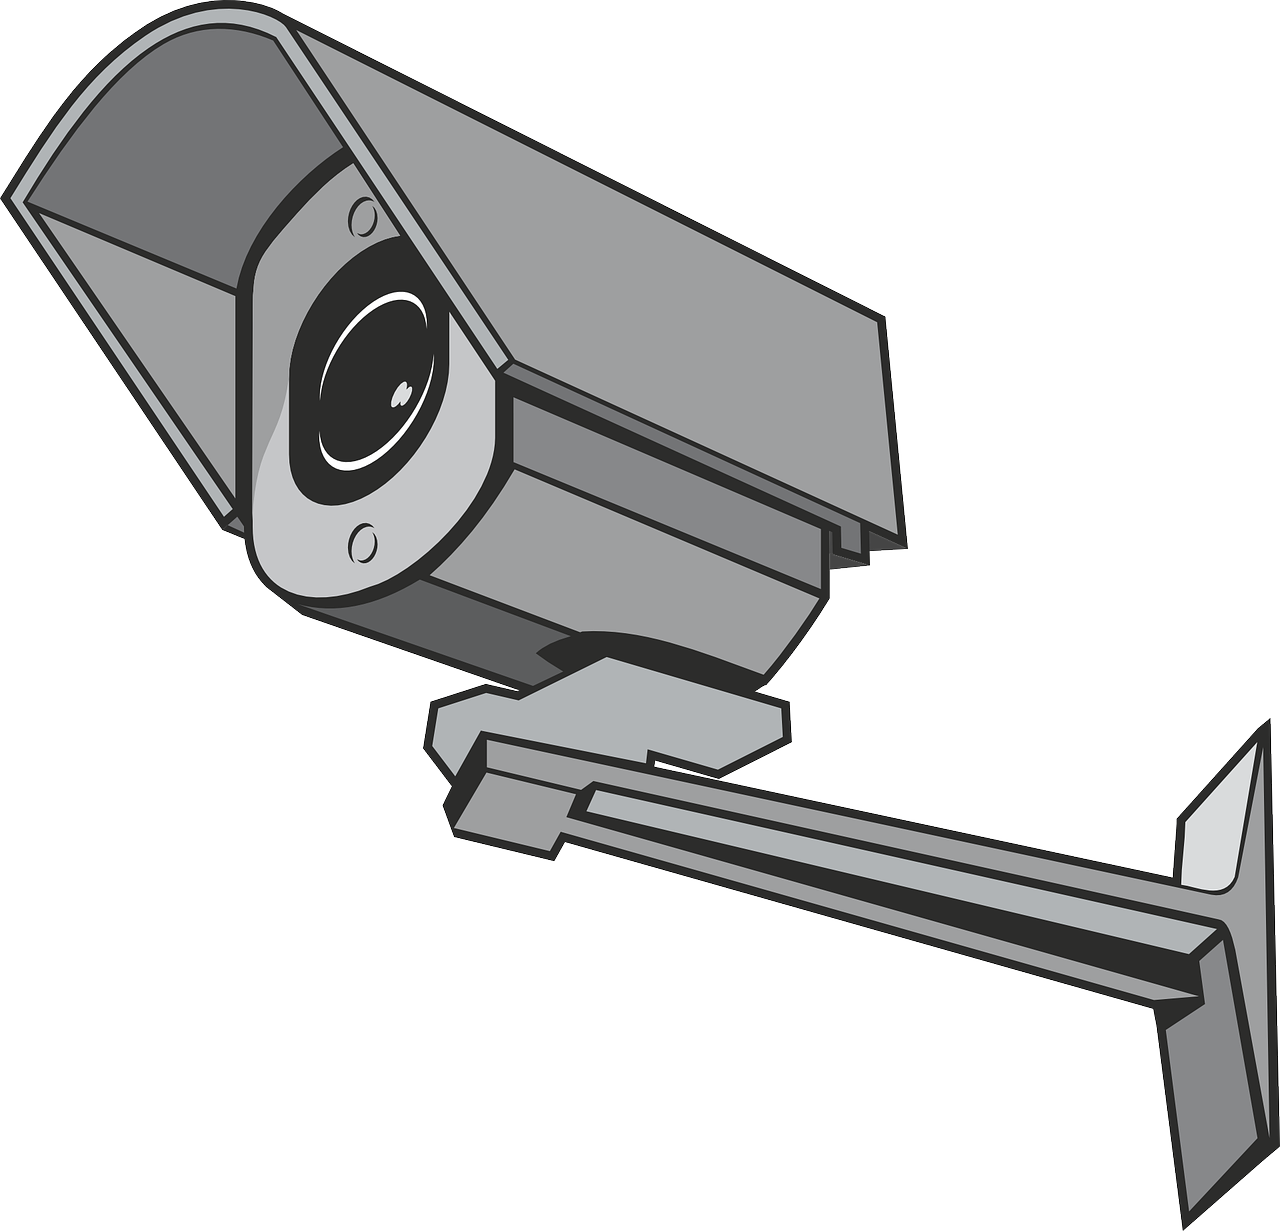 Surveiller votre domicile en continu : les caméras de surveillance